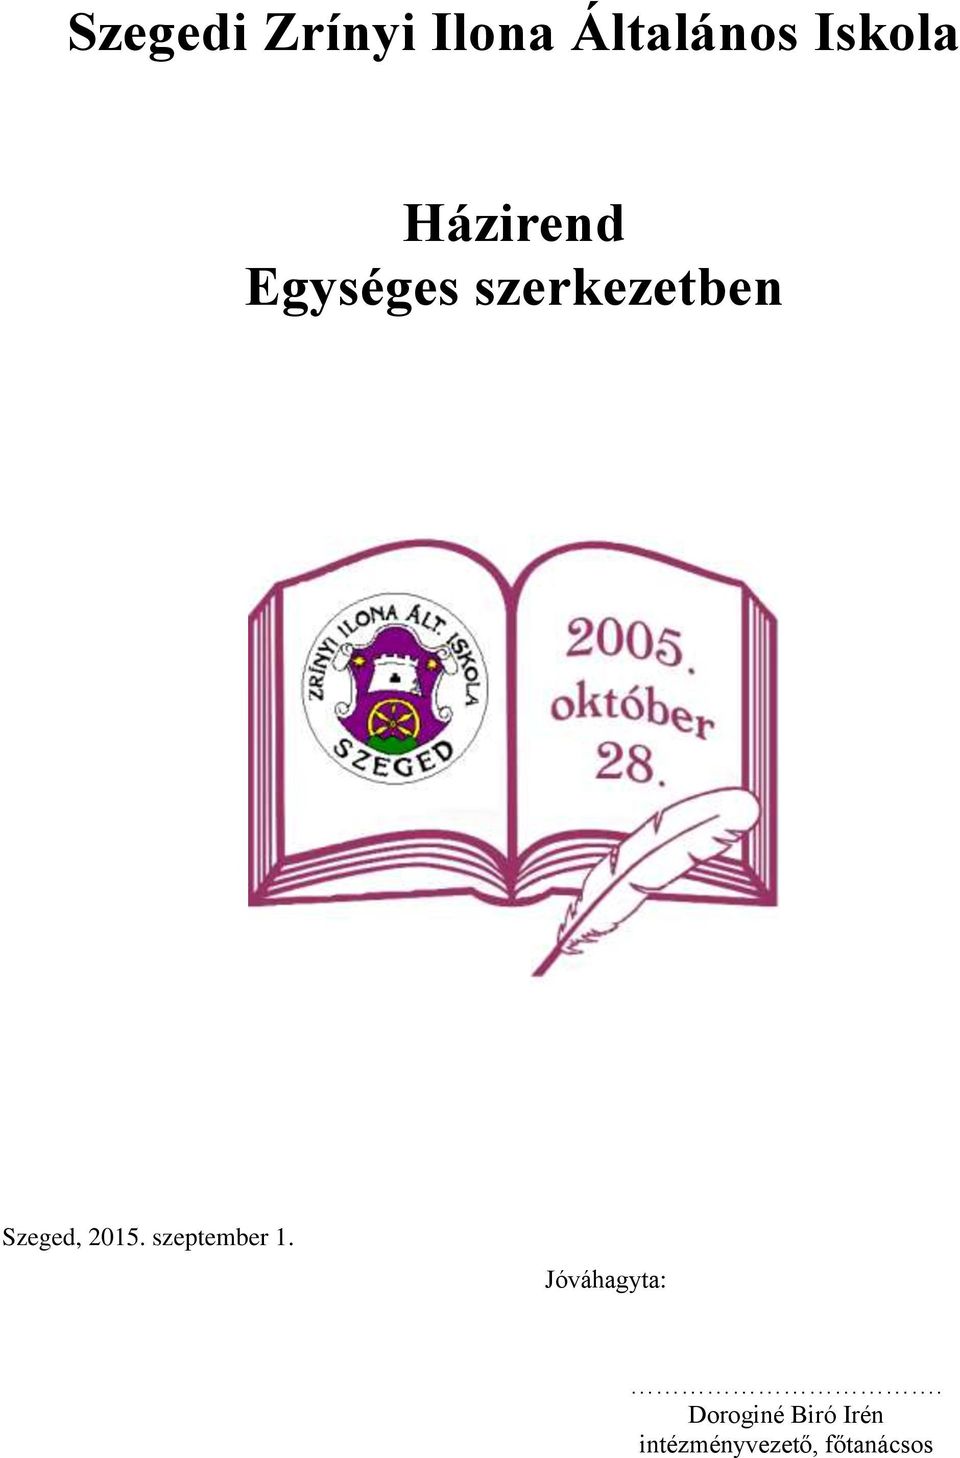 Szegedi Zrínyi Ilona Általános Iskola. Házirend Egységes szerkezetben - PDF  Free Download